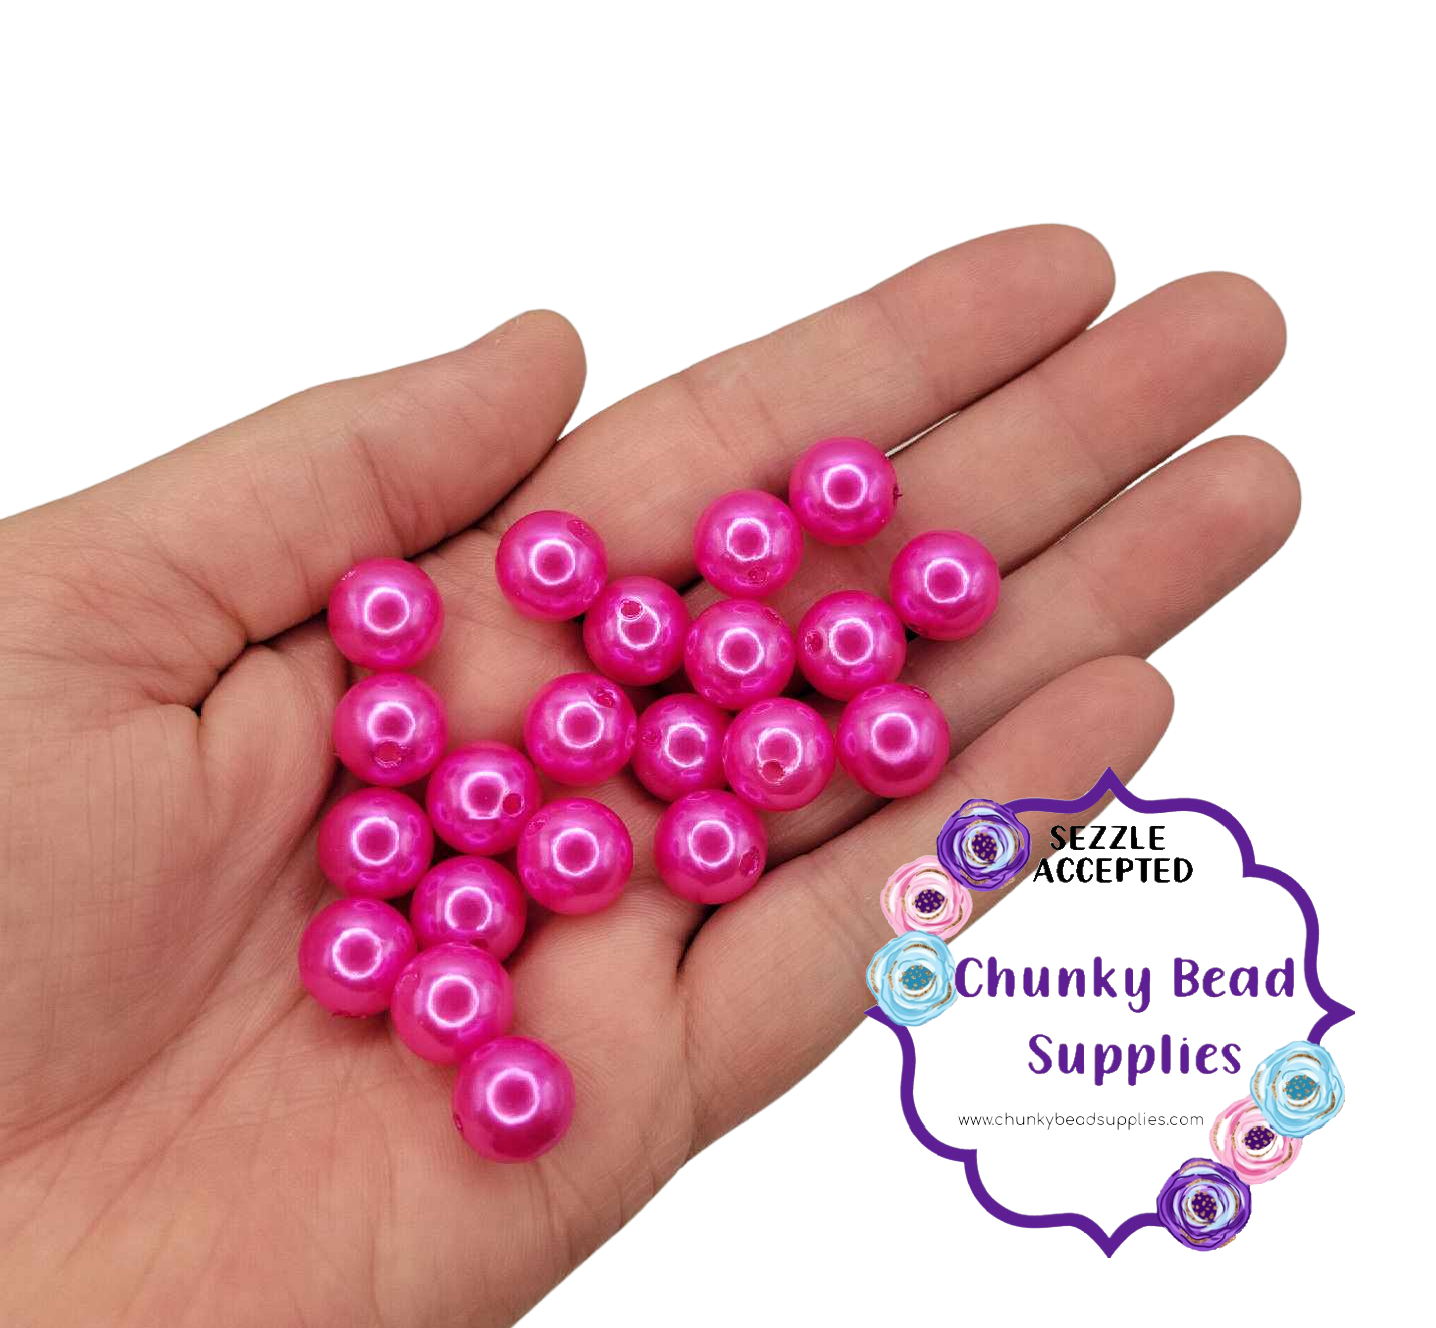 Perles acryliques « Vrai rose vif » de 12 mm